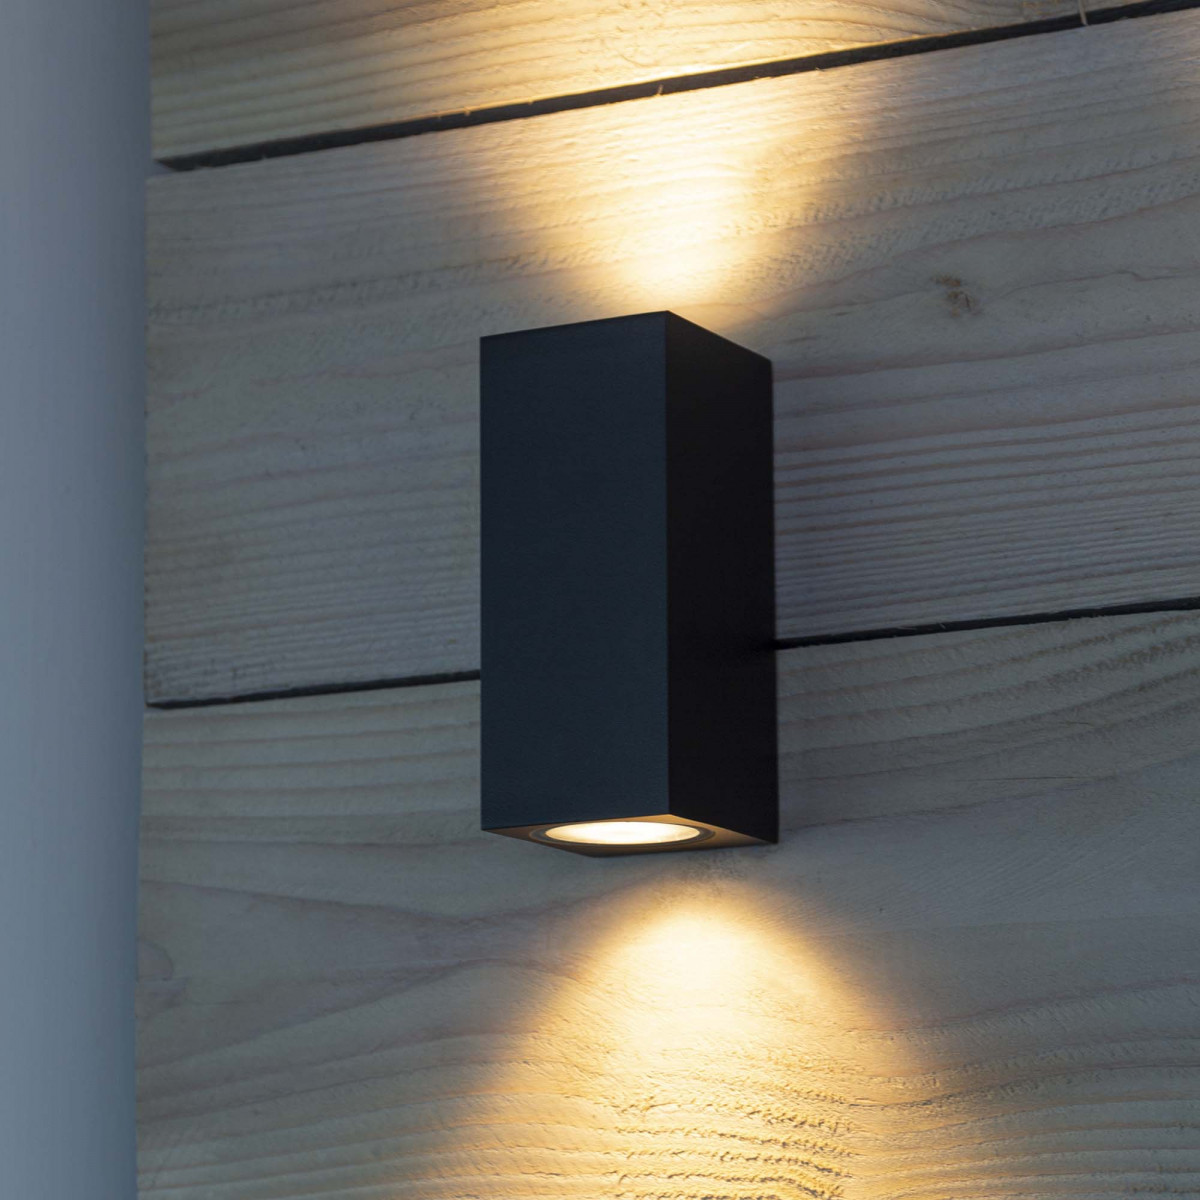 Wandspot kubus zwart, up en downlighter, design muurspot, perfect toepasbaar als gevelverlichting, KS kwaliteitsverlichting, moderne wandspot met 2 lichtbundels